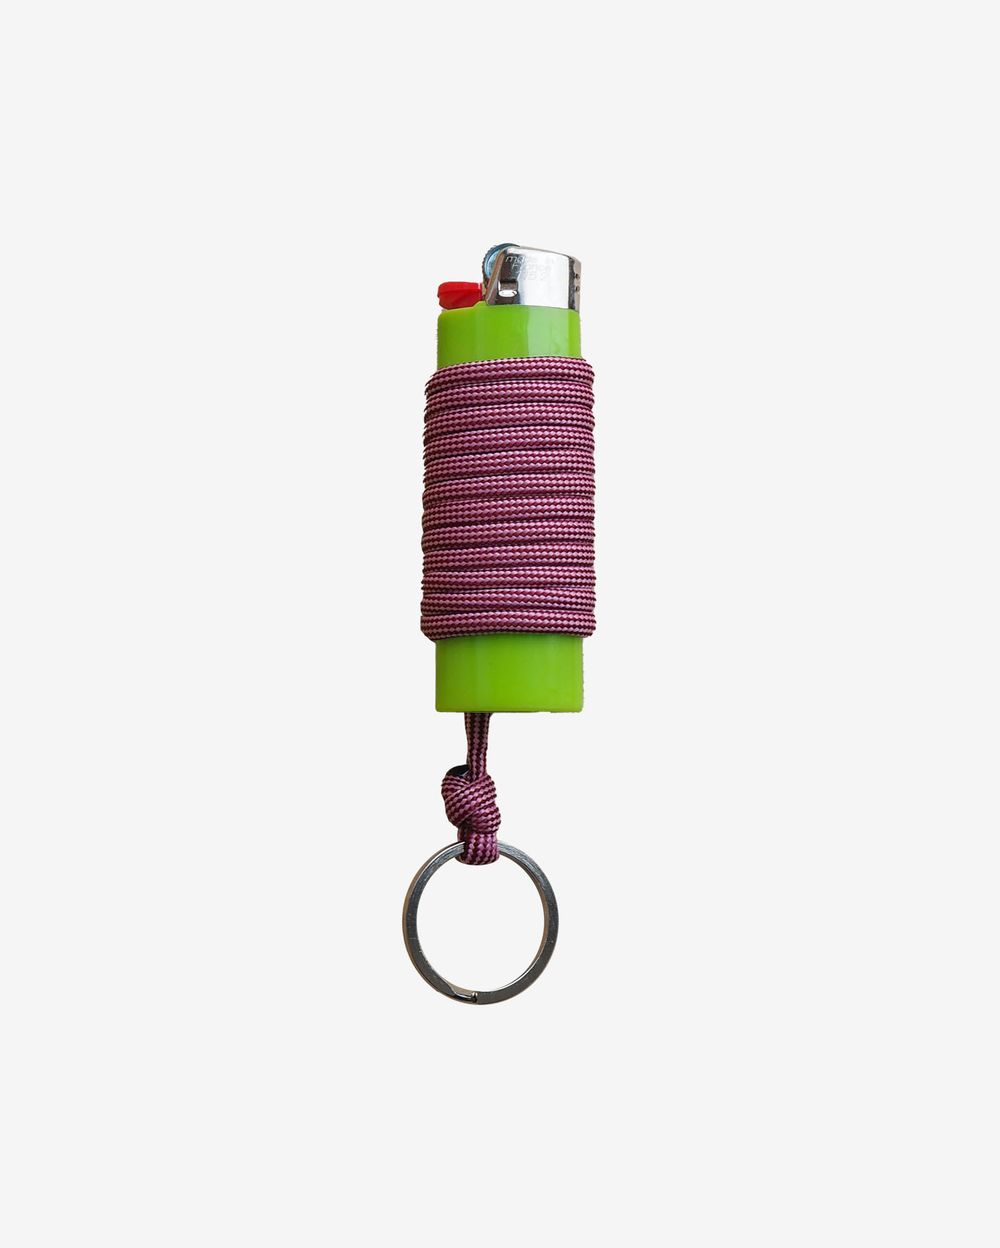 Зажигалка Ack Items зелёная (ягодный шнурок)